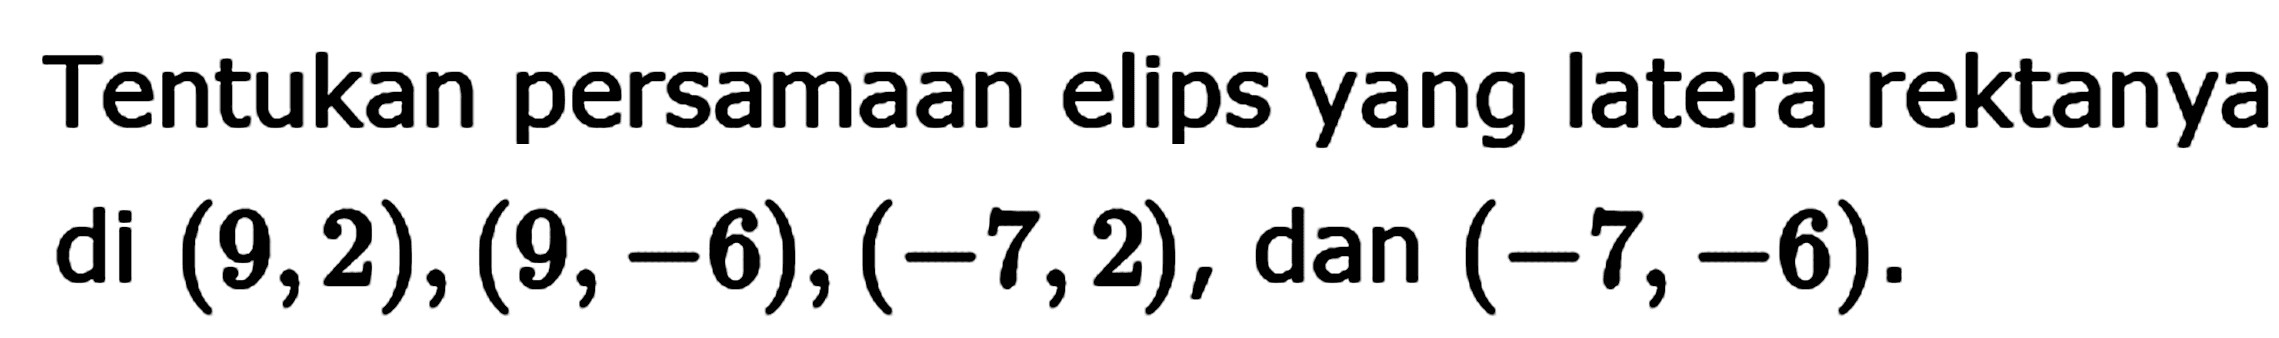 Tentukan persamaan elips yang latera rektanya di (9,2), (9, -6), (-7,2), dan (-7,-6)